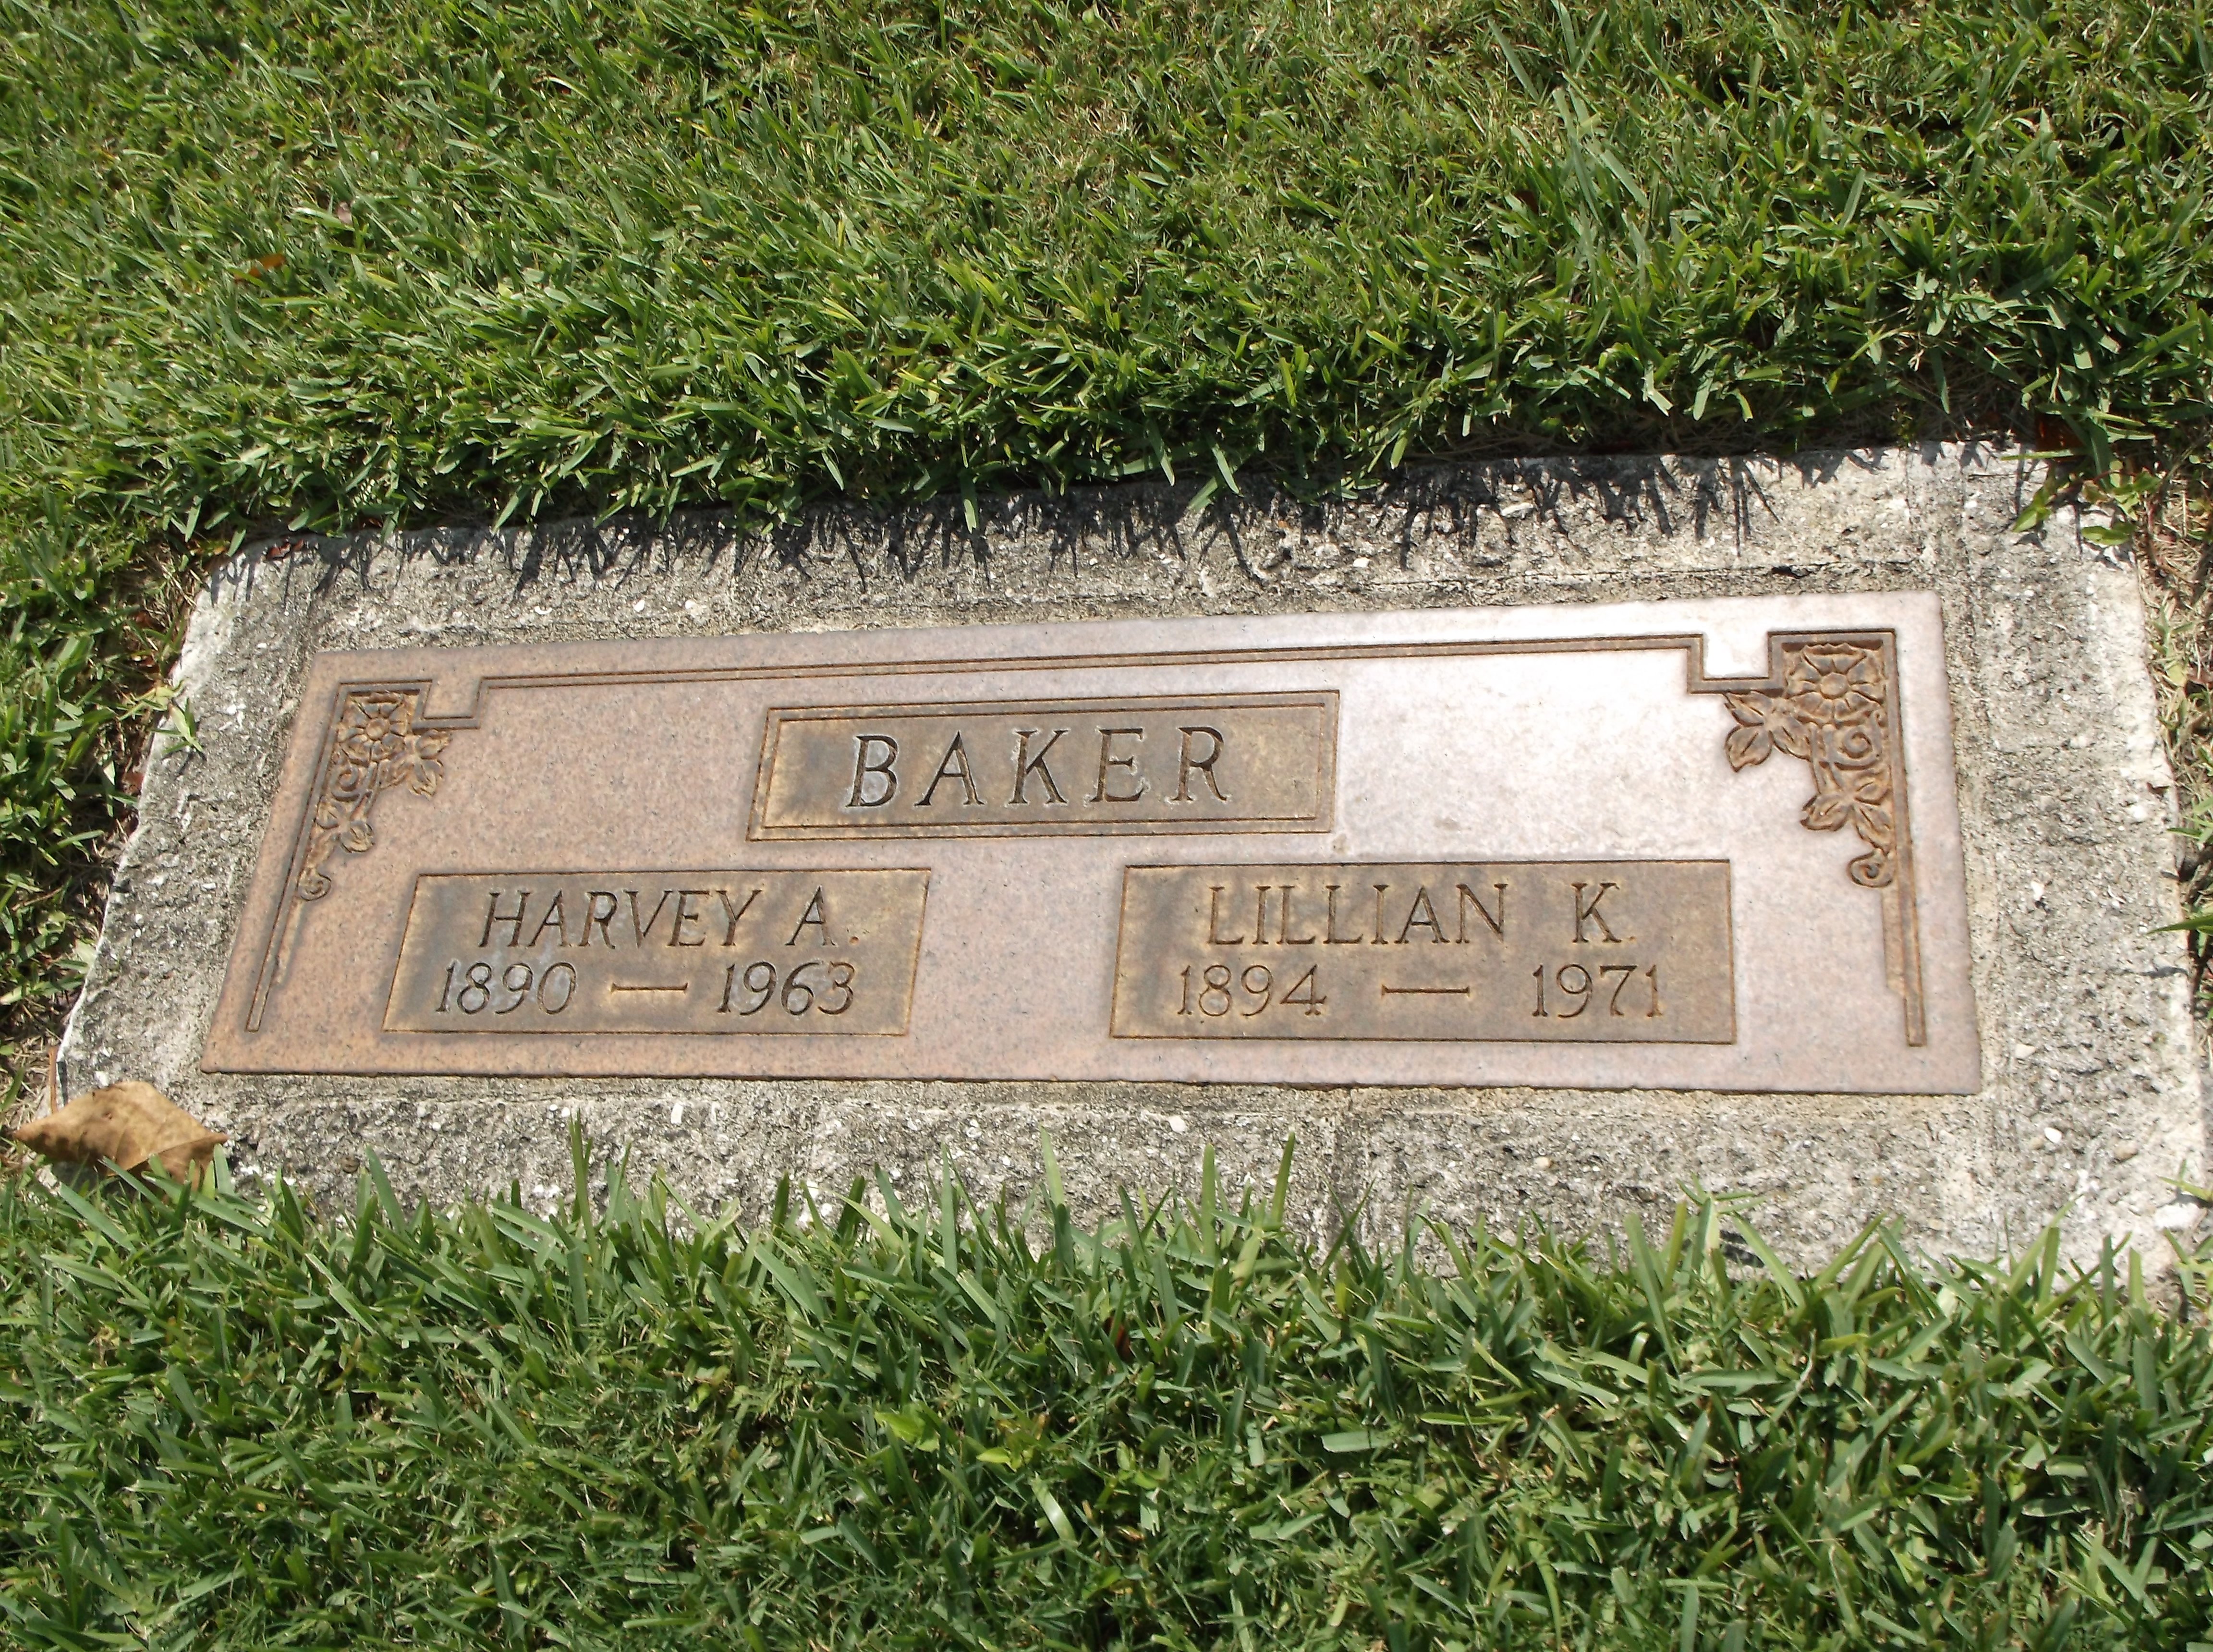 Lillian K Baker